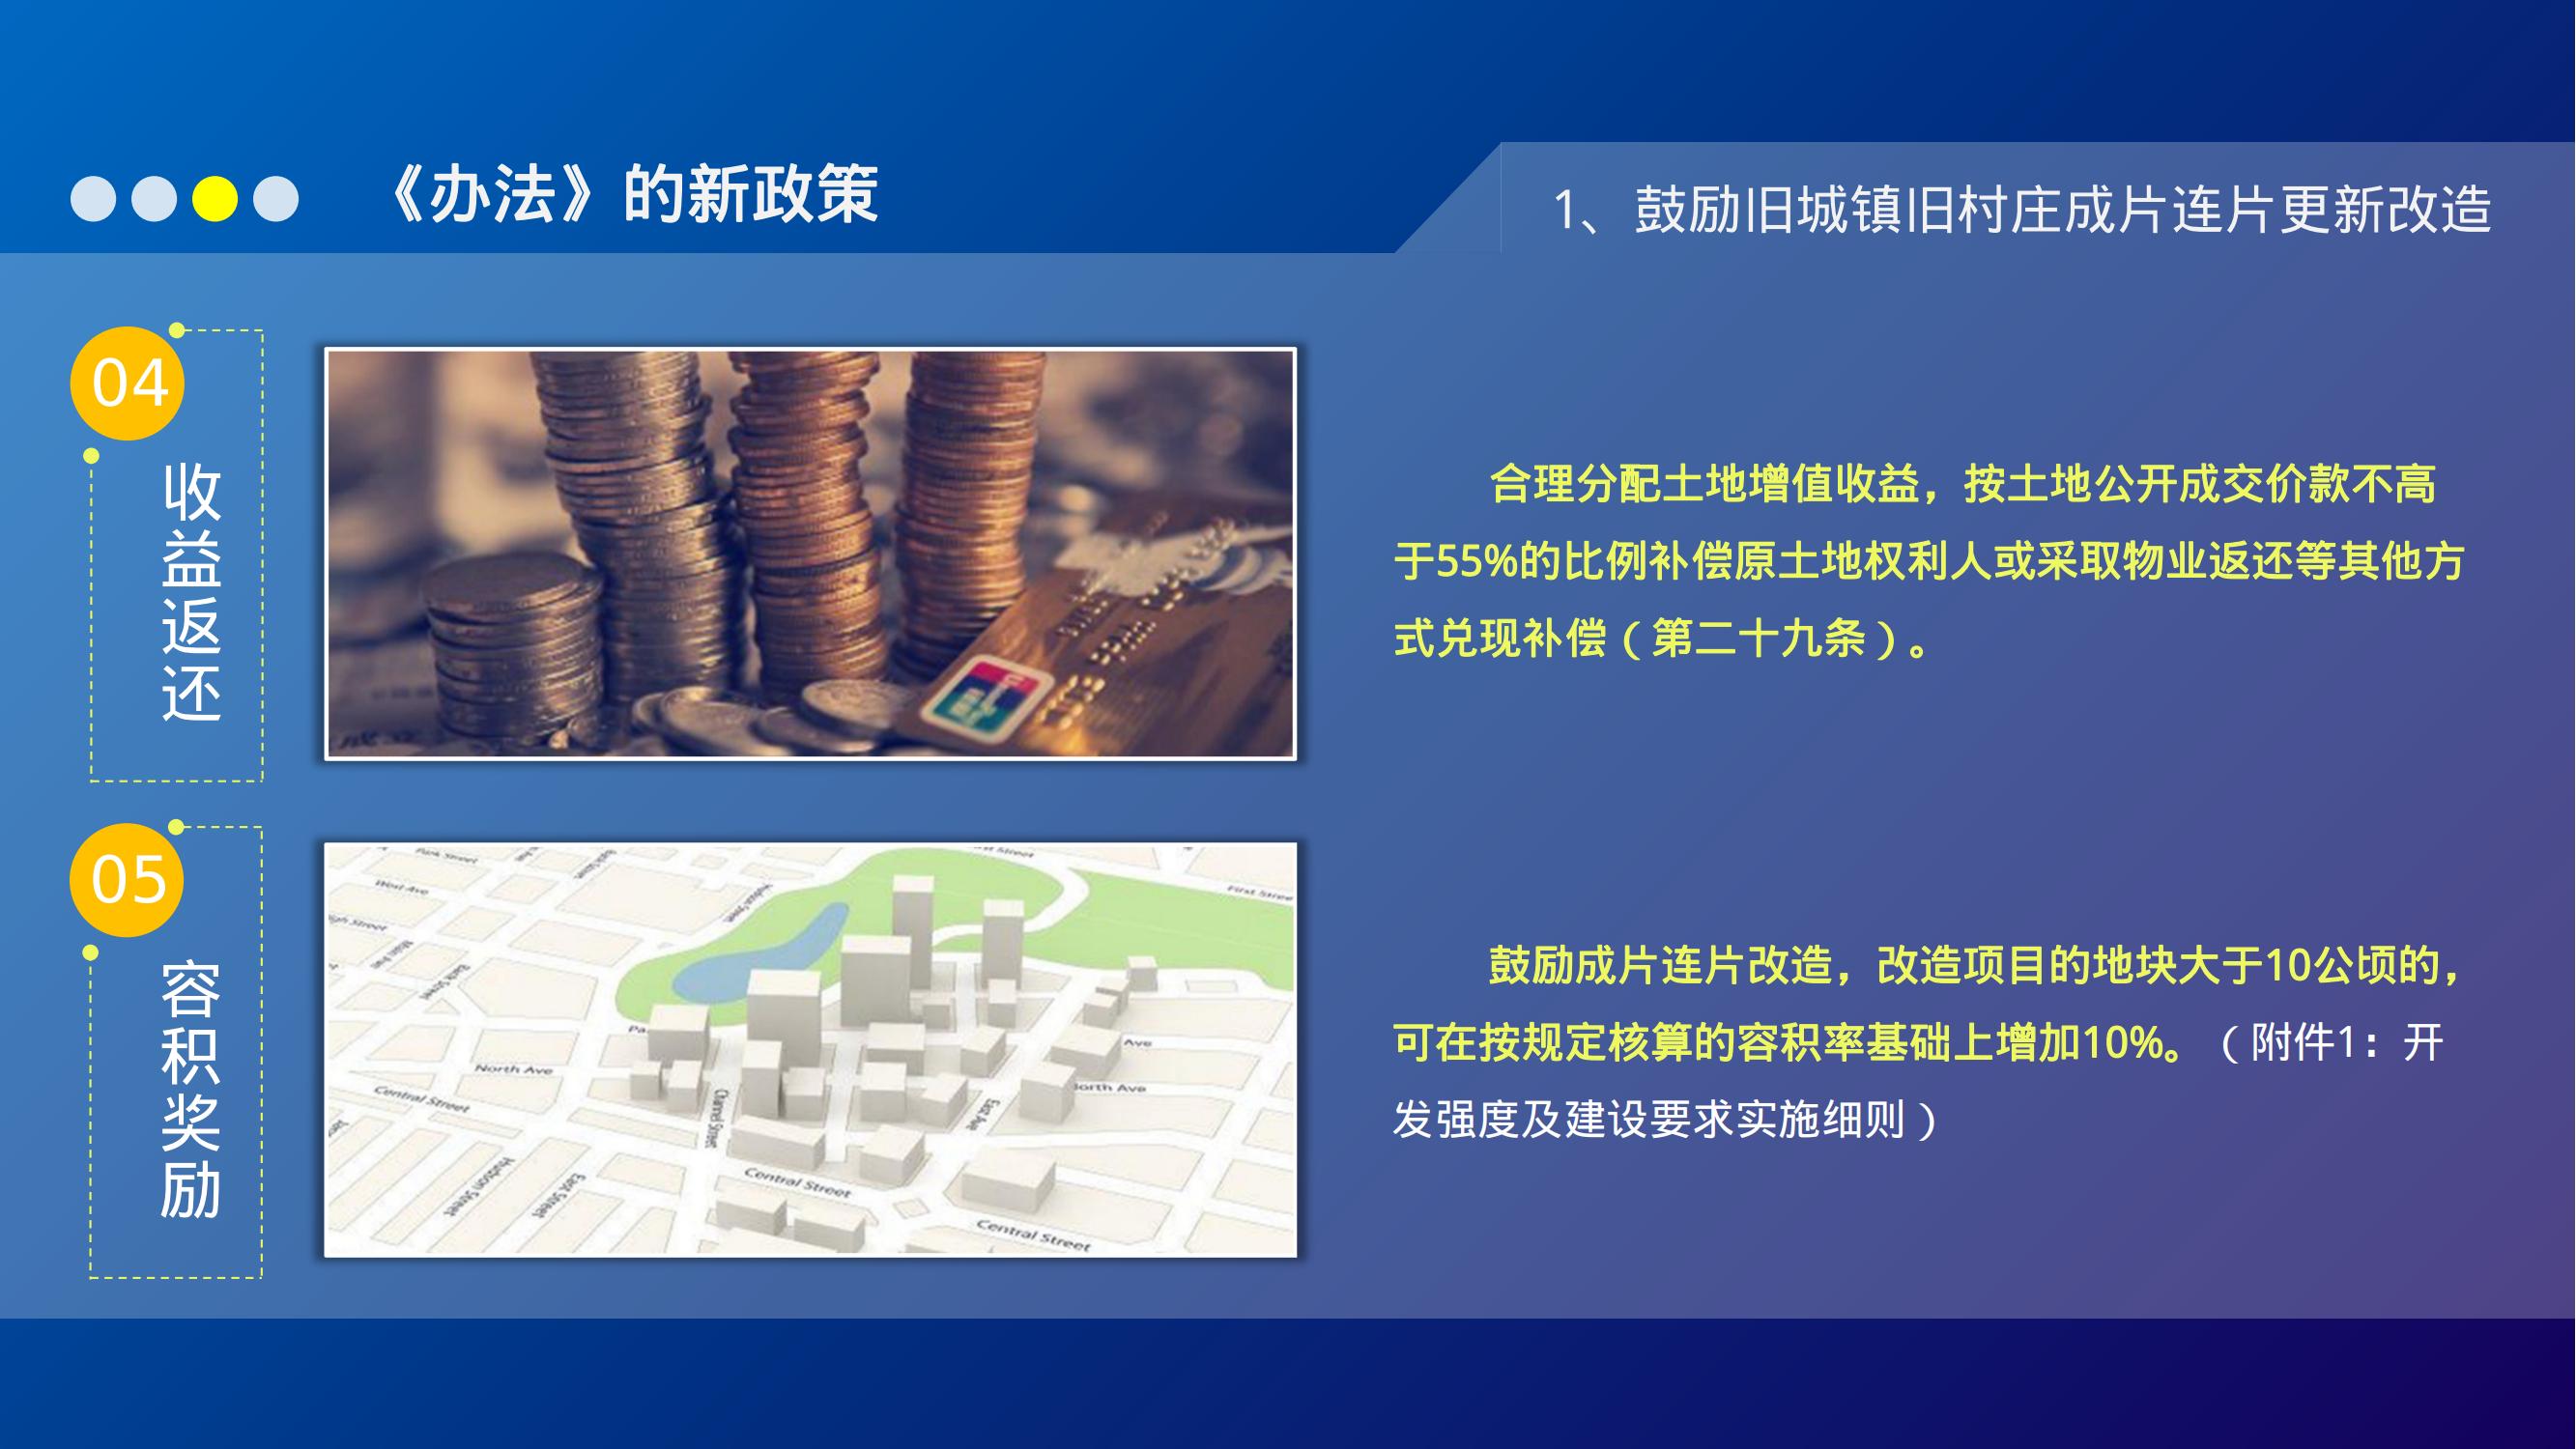 5-1图解《湛江市城市更新（“三旧”改造）管理暂行办法》_13.jpg